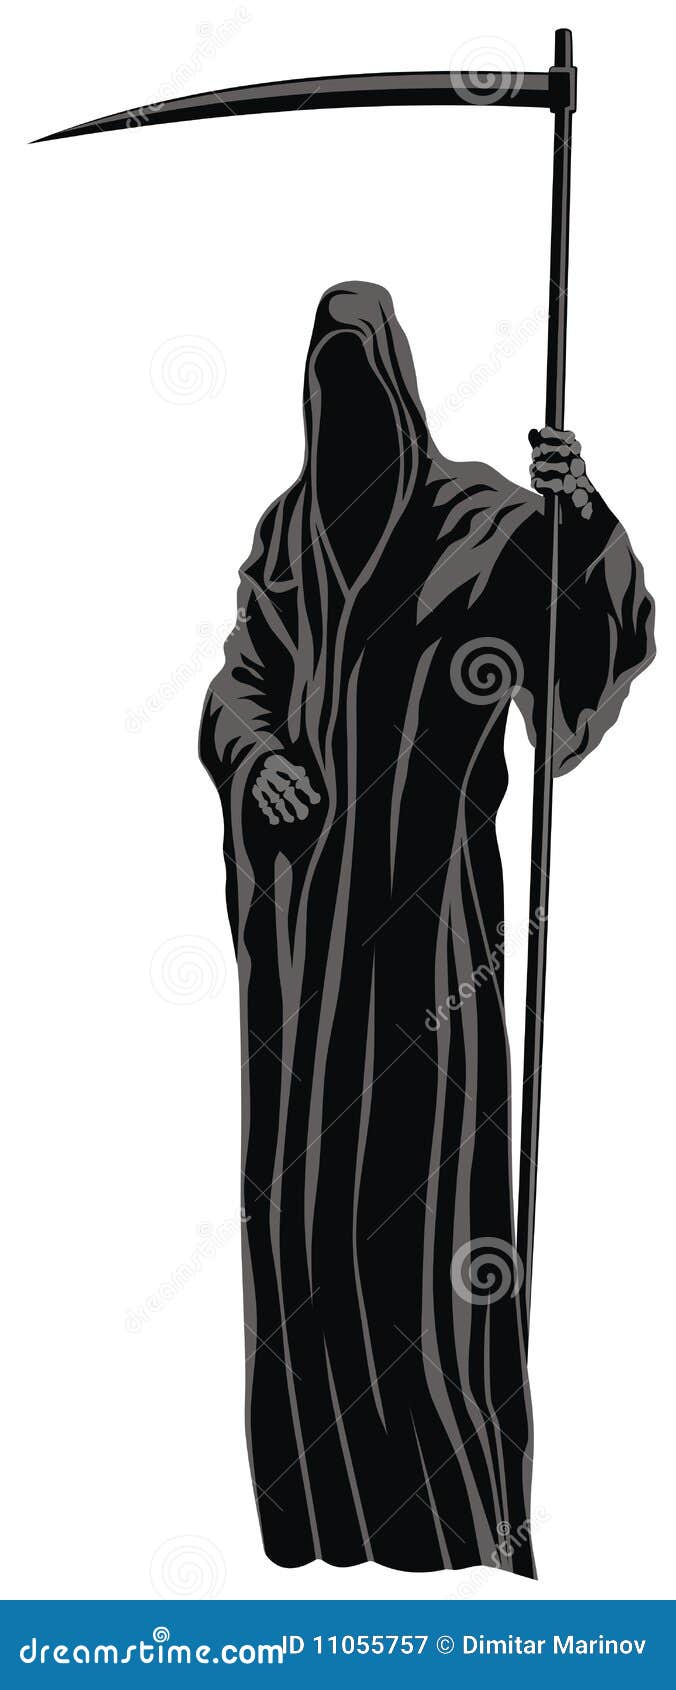 The Grim Reaper stock vector. Illustration of scythe - 11055757